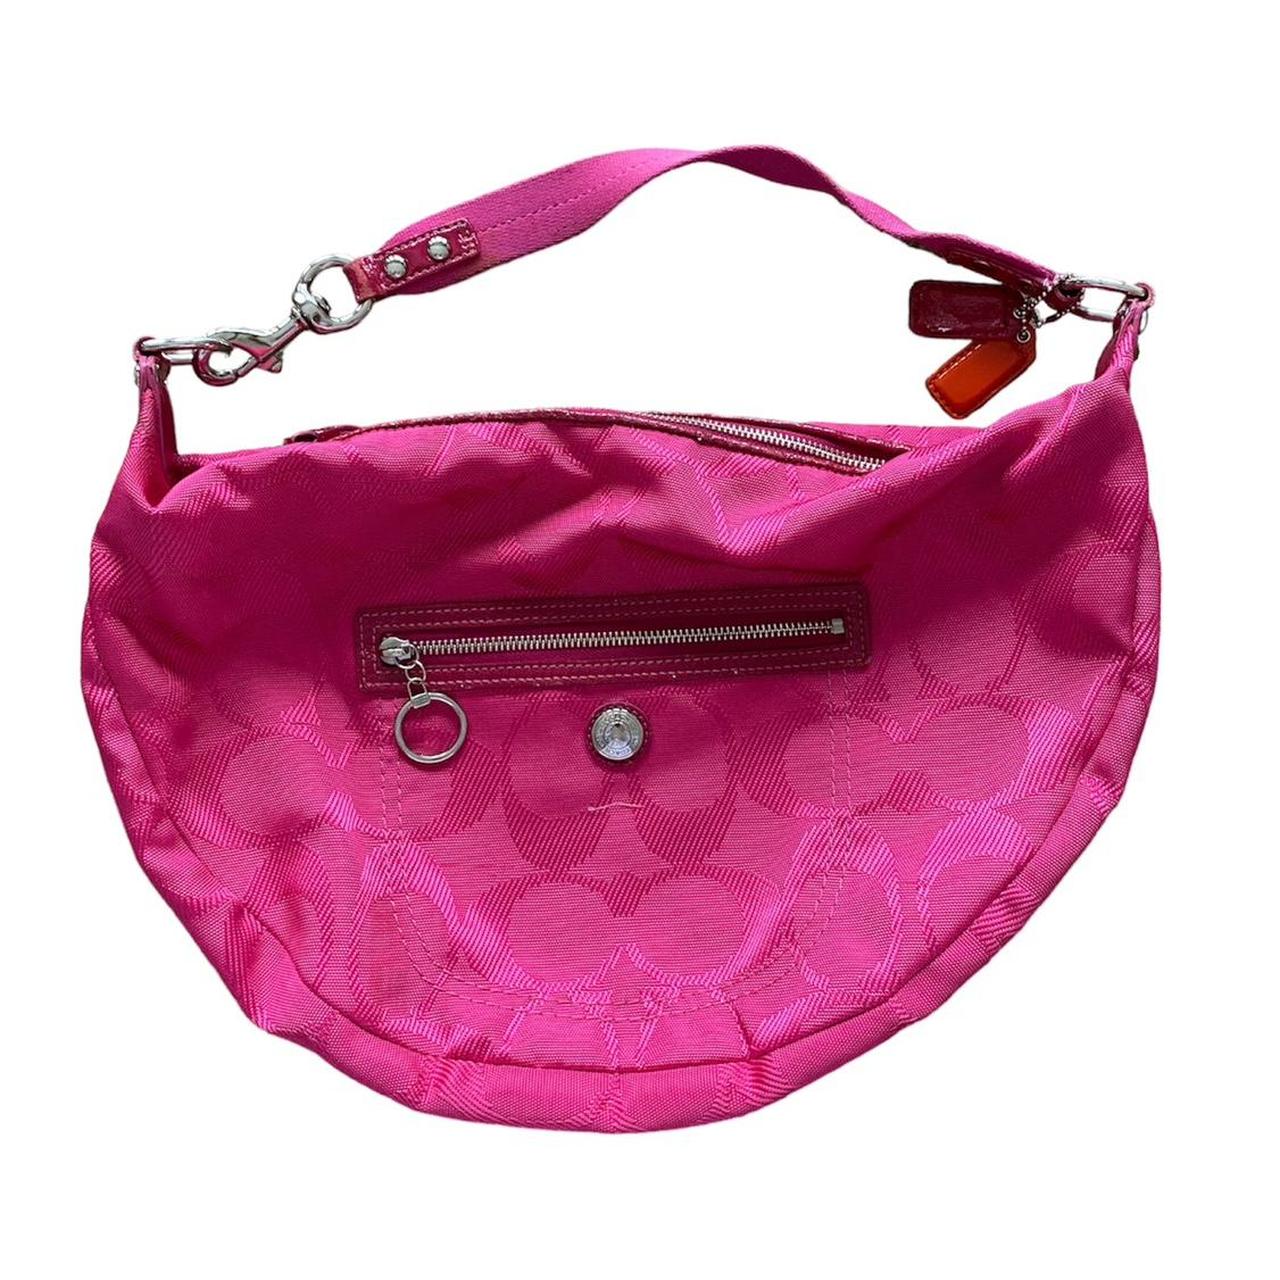 coach pink bag